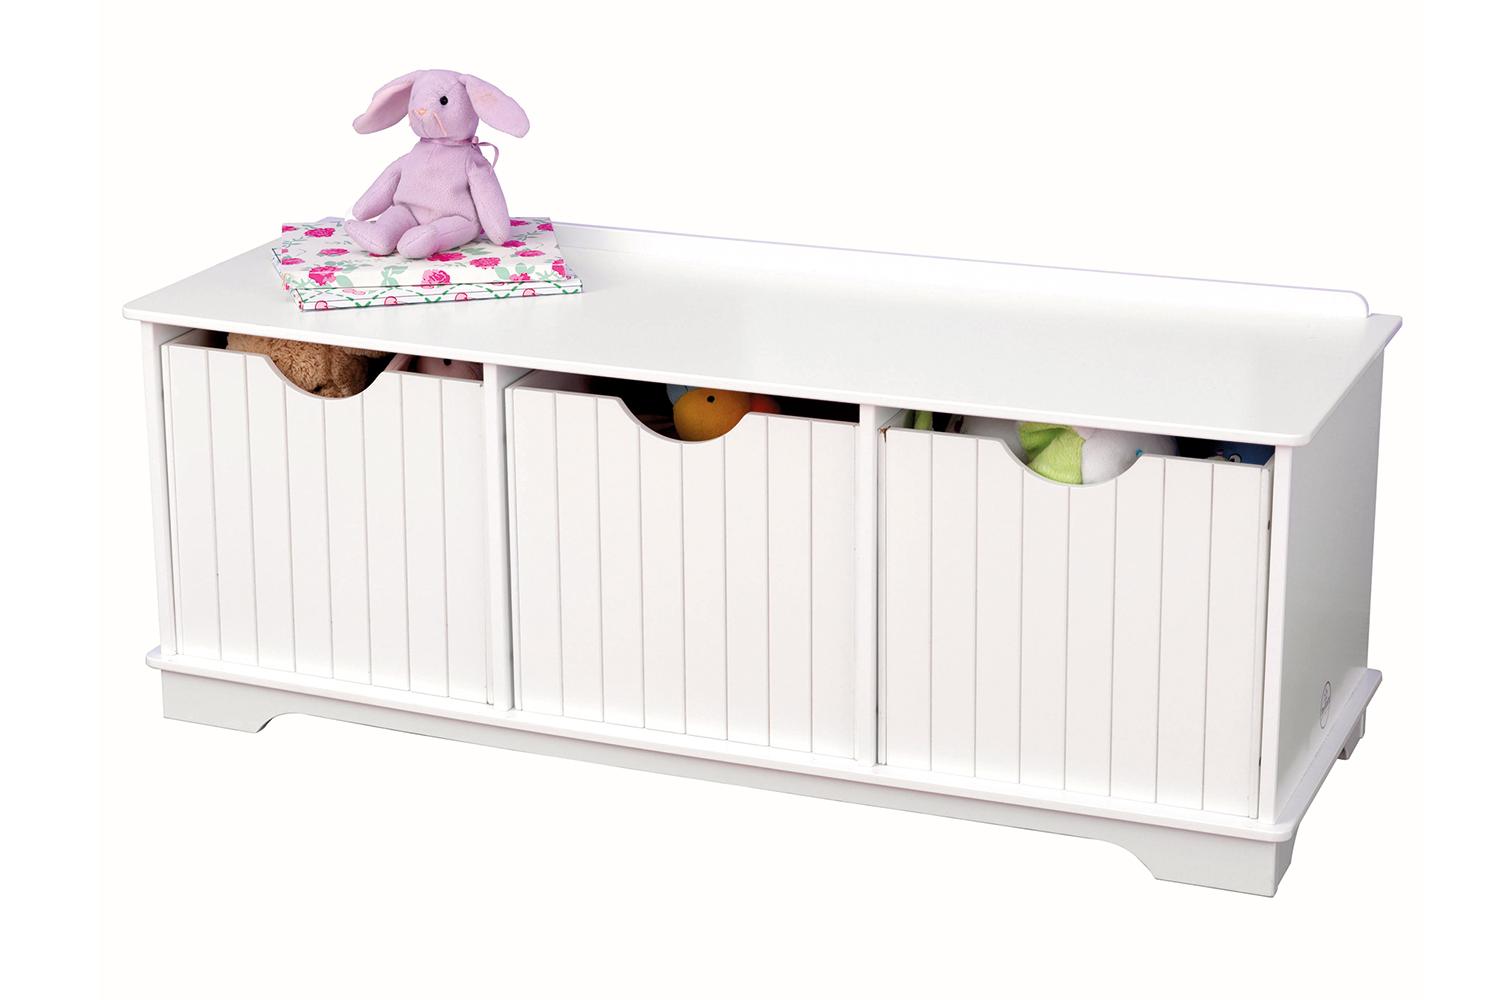 Скамья с ящиком для хранения игрушек в детской комнате